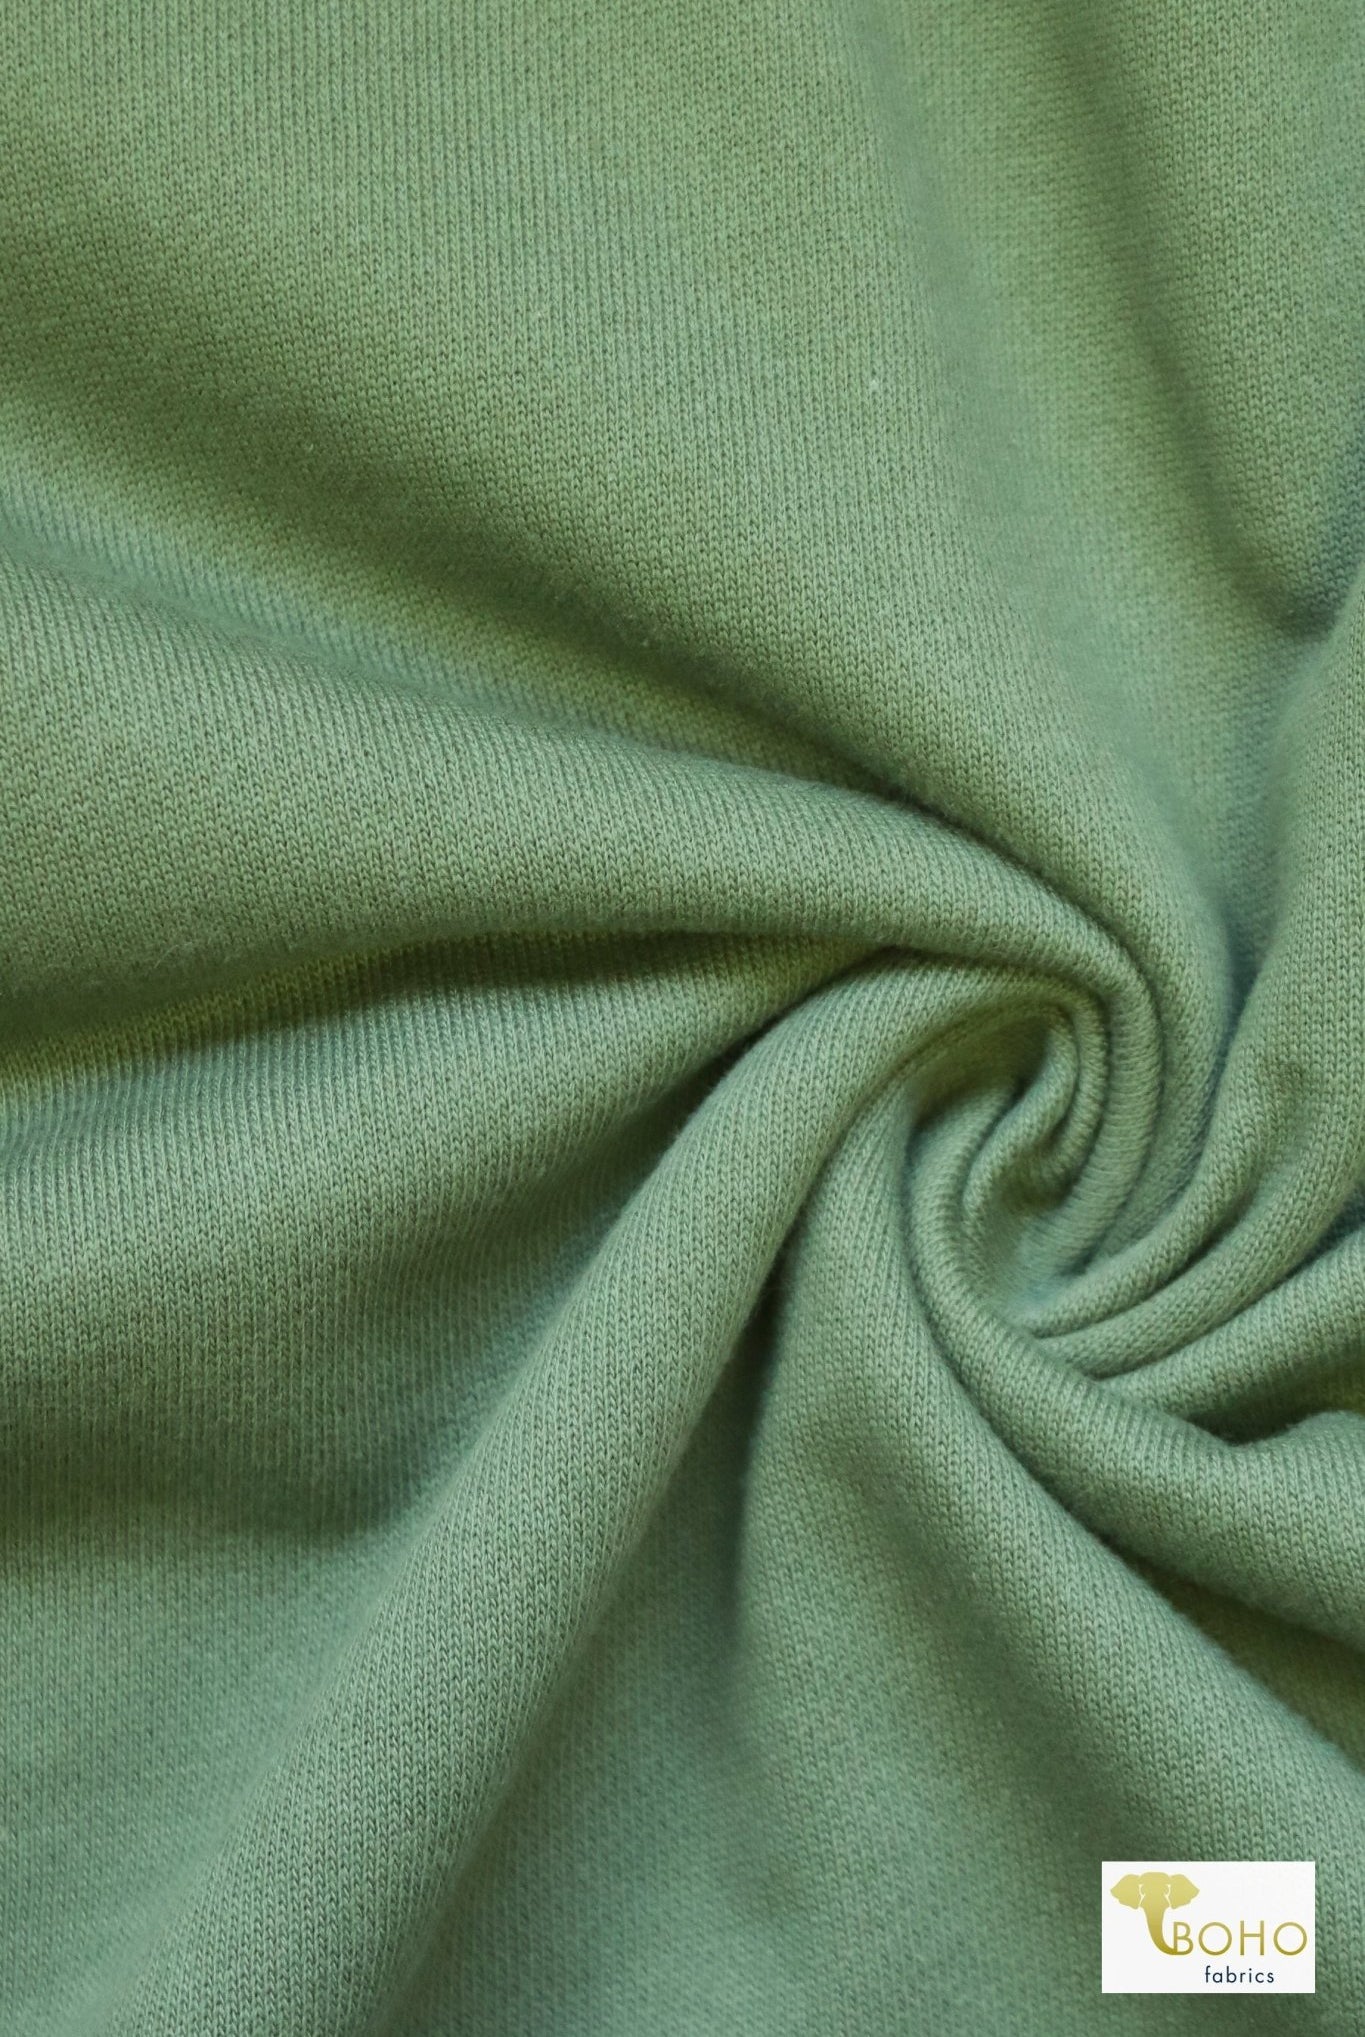 Vintage Sweatshirt Fleece. - Boho Fabrics